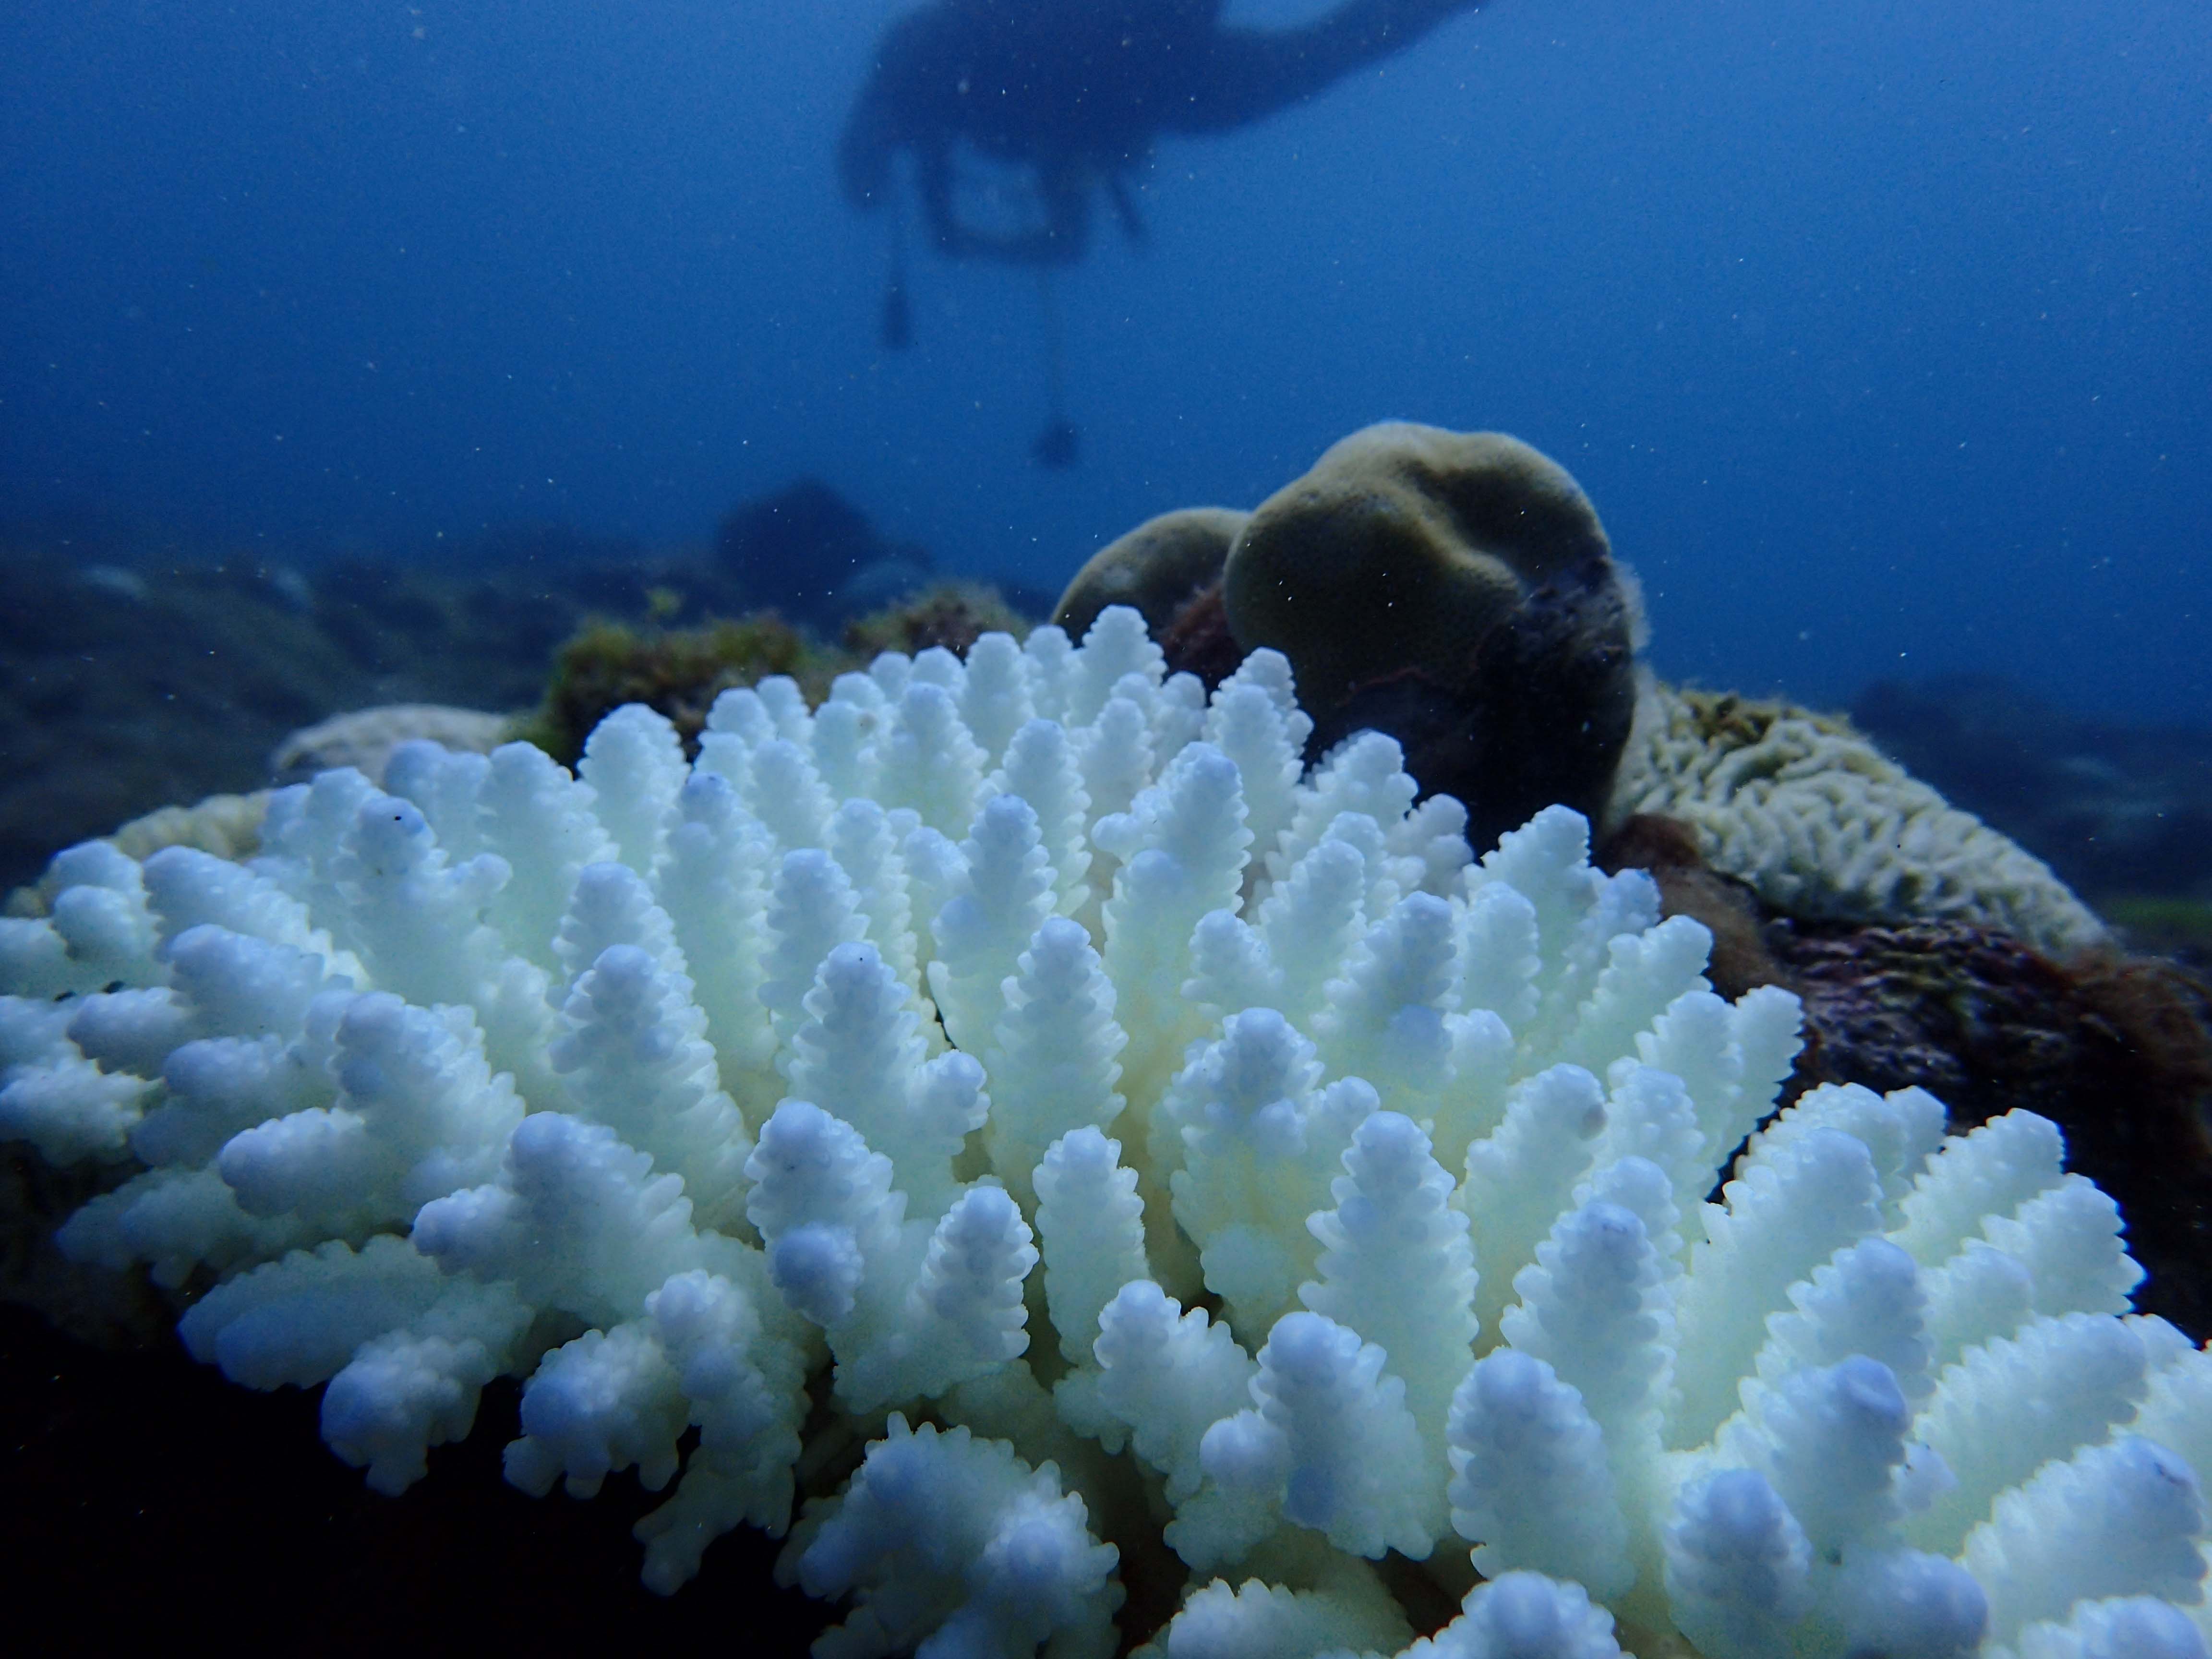 小琉球珊瑚白化問題嚴重 海溫驟升為關鍵原因 - Newsweek